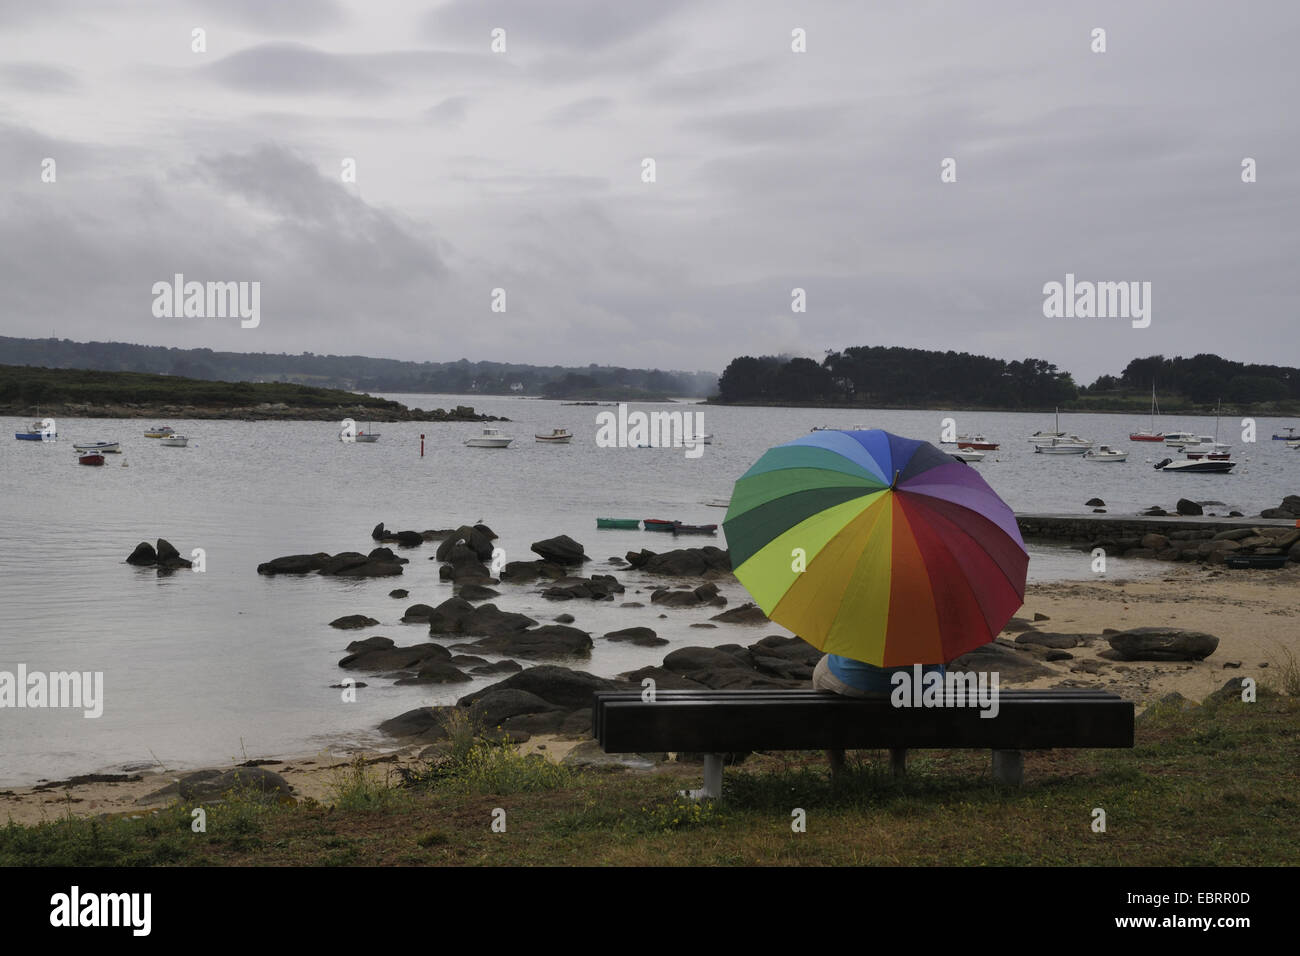 Mann im Regen mit einem bunten Schirm auf einer Bank sitzen und beobachtete das Meer, verregneten Urlaub Frankreich, Bretagne Stockfoto